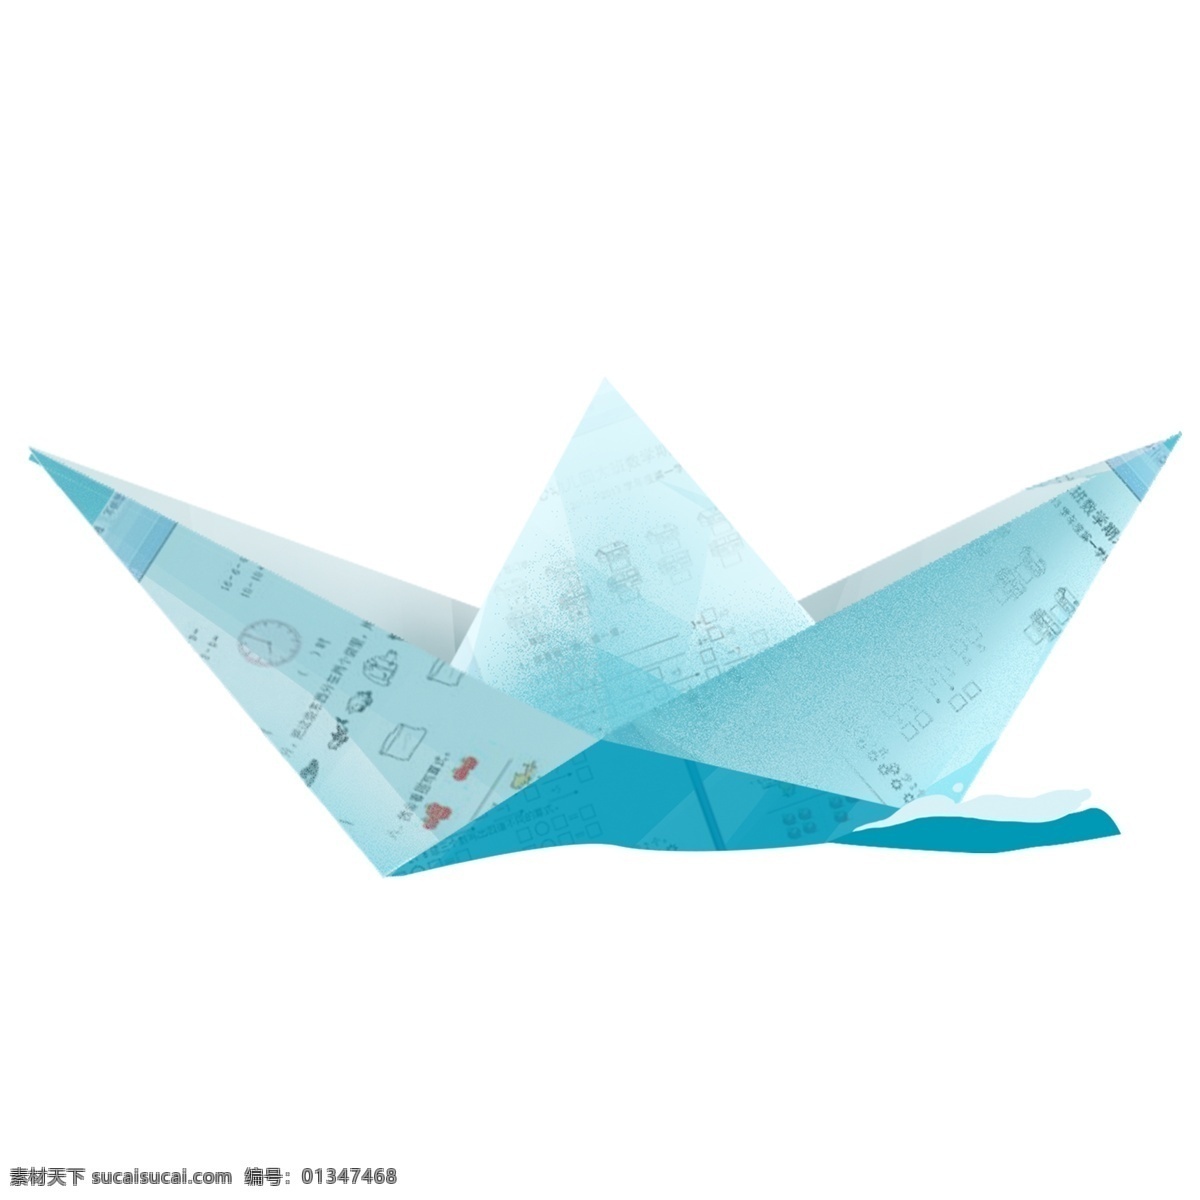 蓝色 纸船 装饰 图案 淡蓝色 纸飞机 插画 绘画素材 创意 简约 小清新 水彩 装饰图案 文艺 可爱 卡通